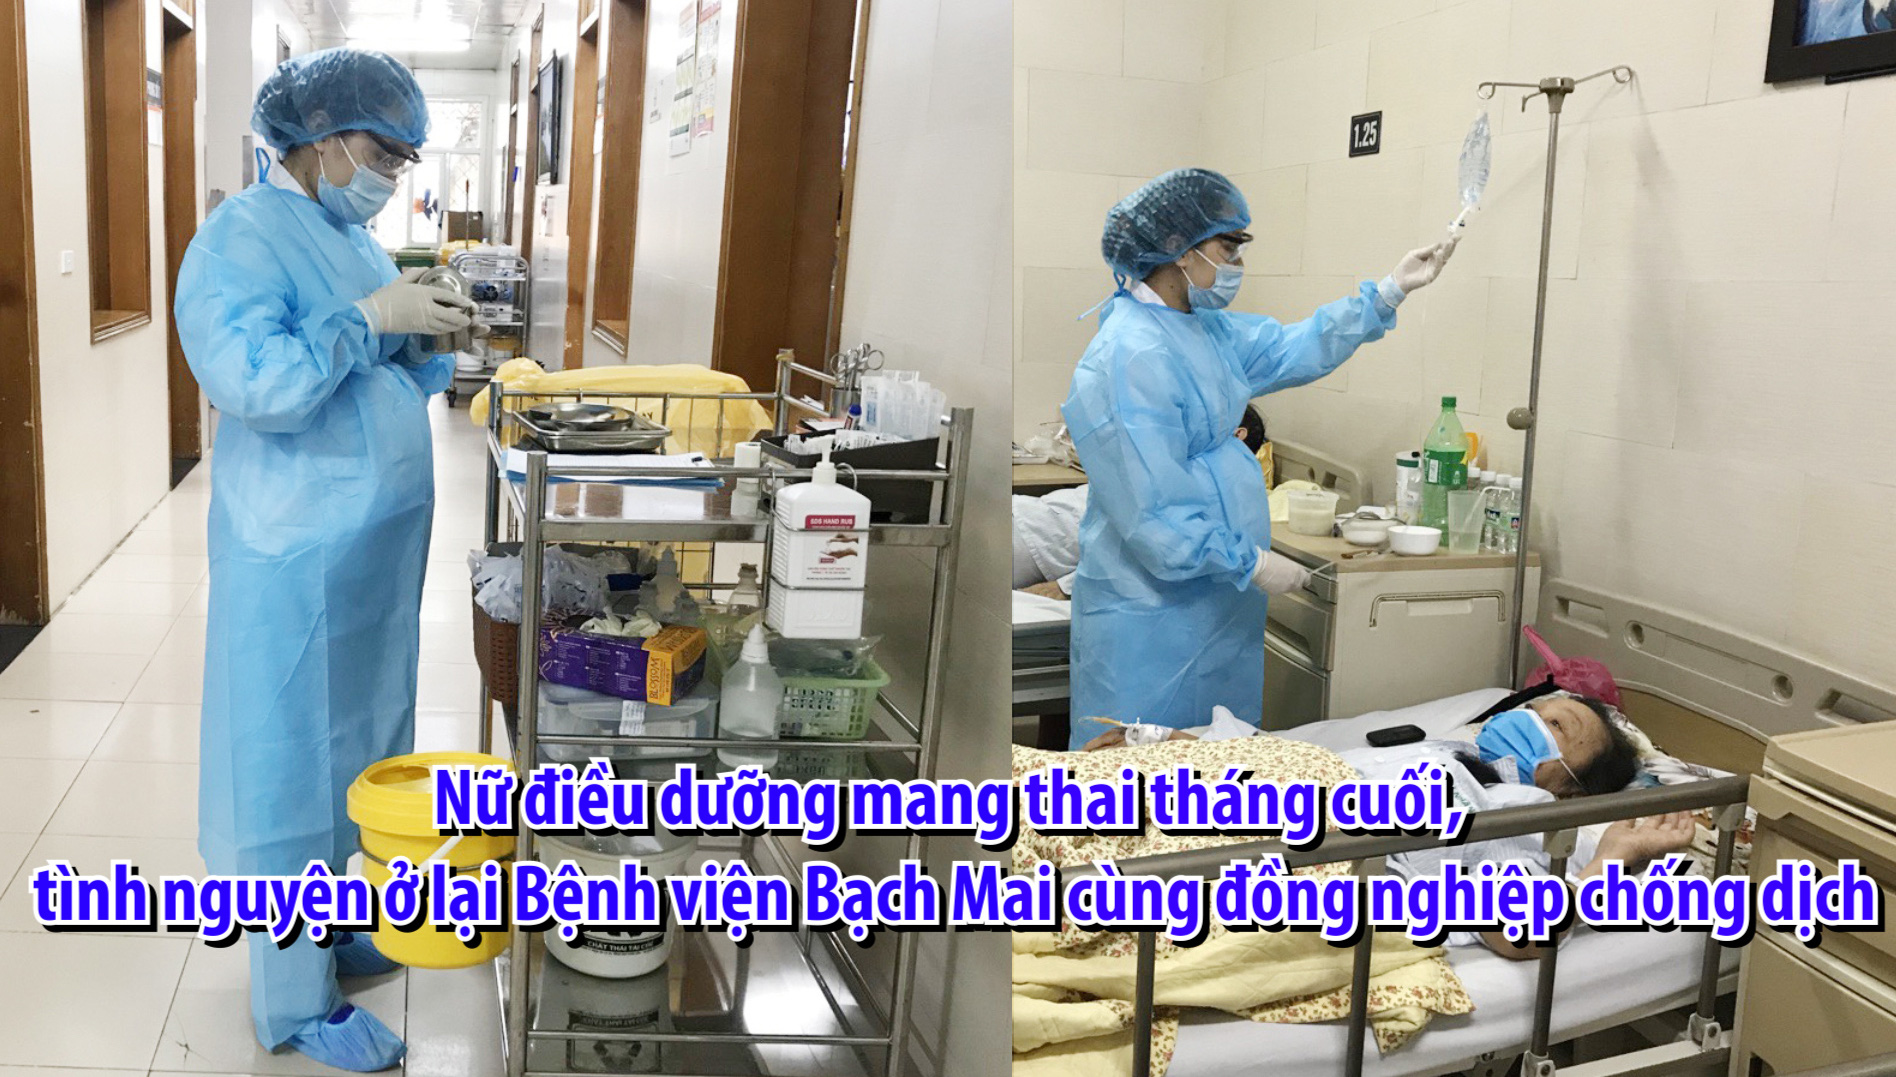 Nữ điều dưỡng mang thai tháng cuối, tình nguyện ở lại Bệnh viện Bạch Mai cùng đồng nghiệp chống dịch